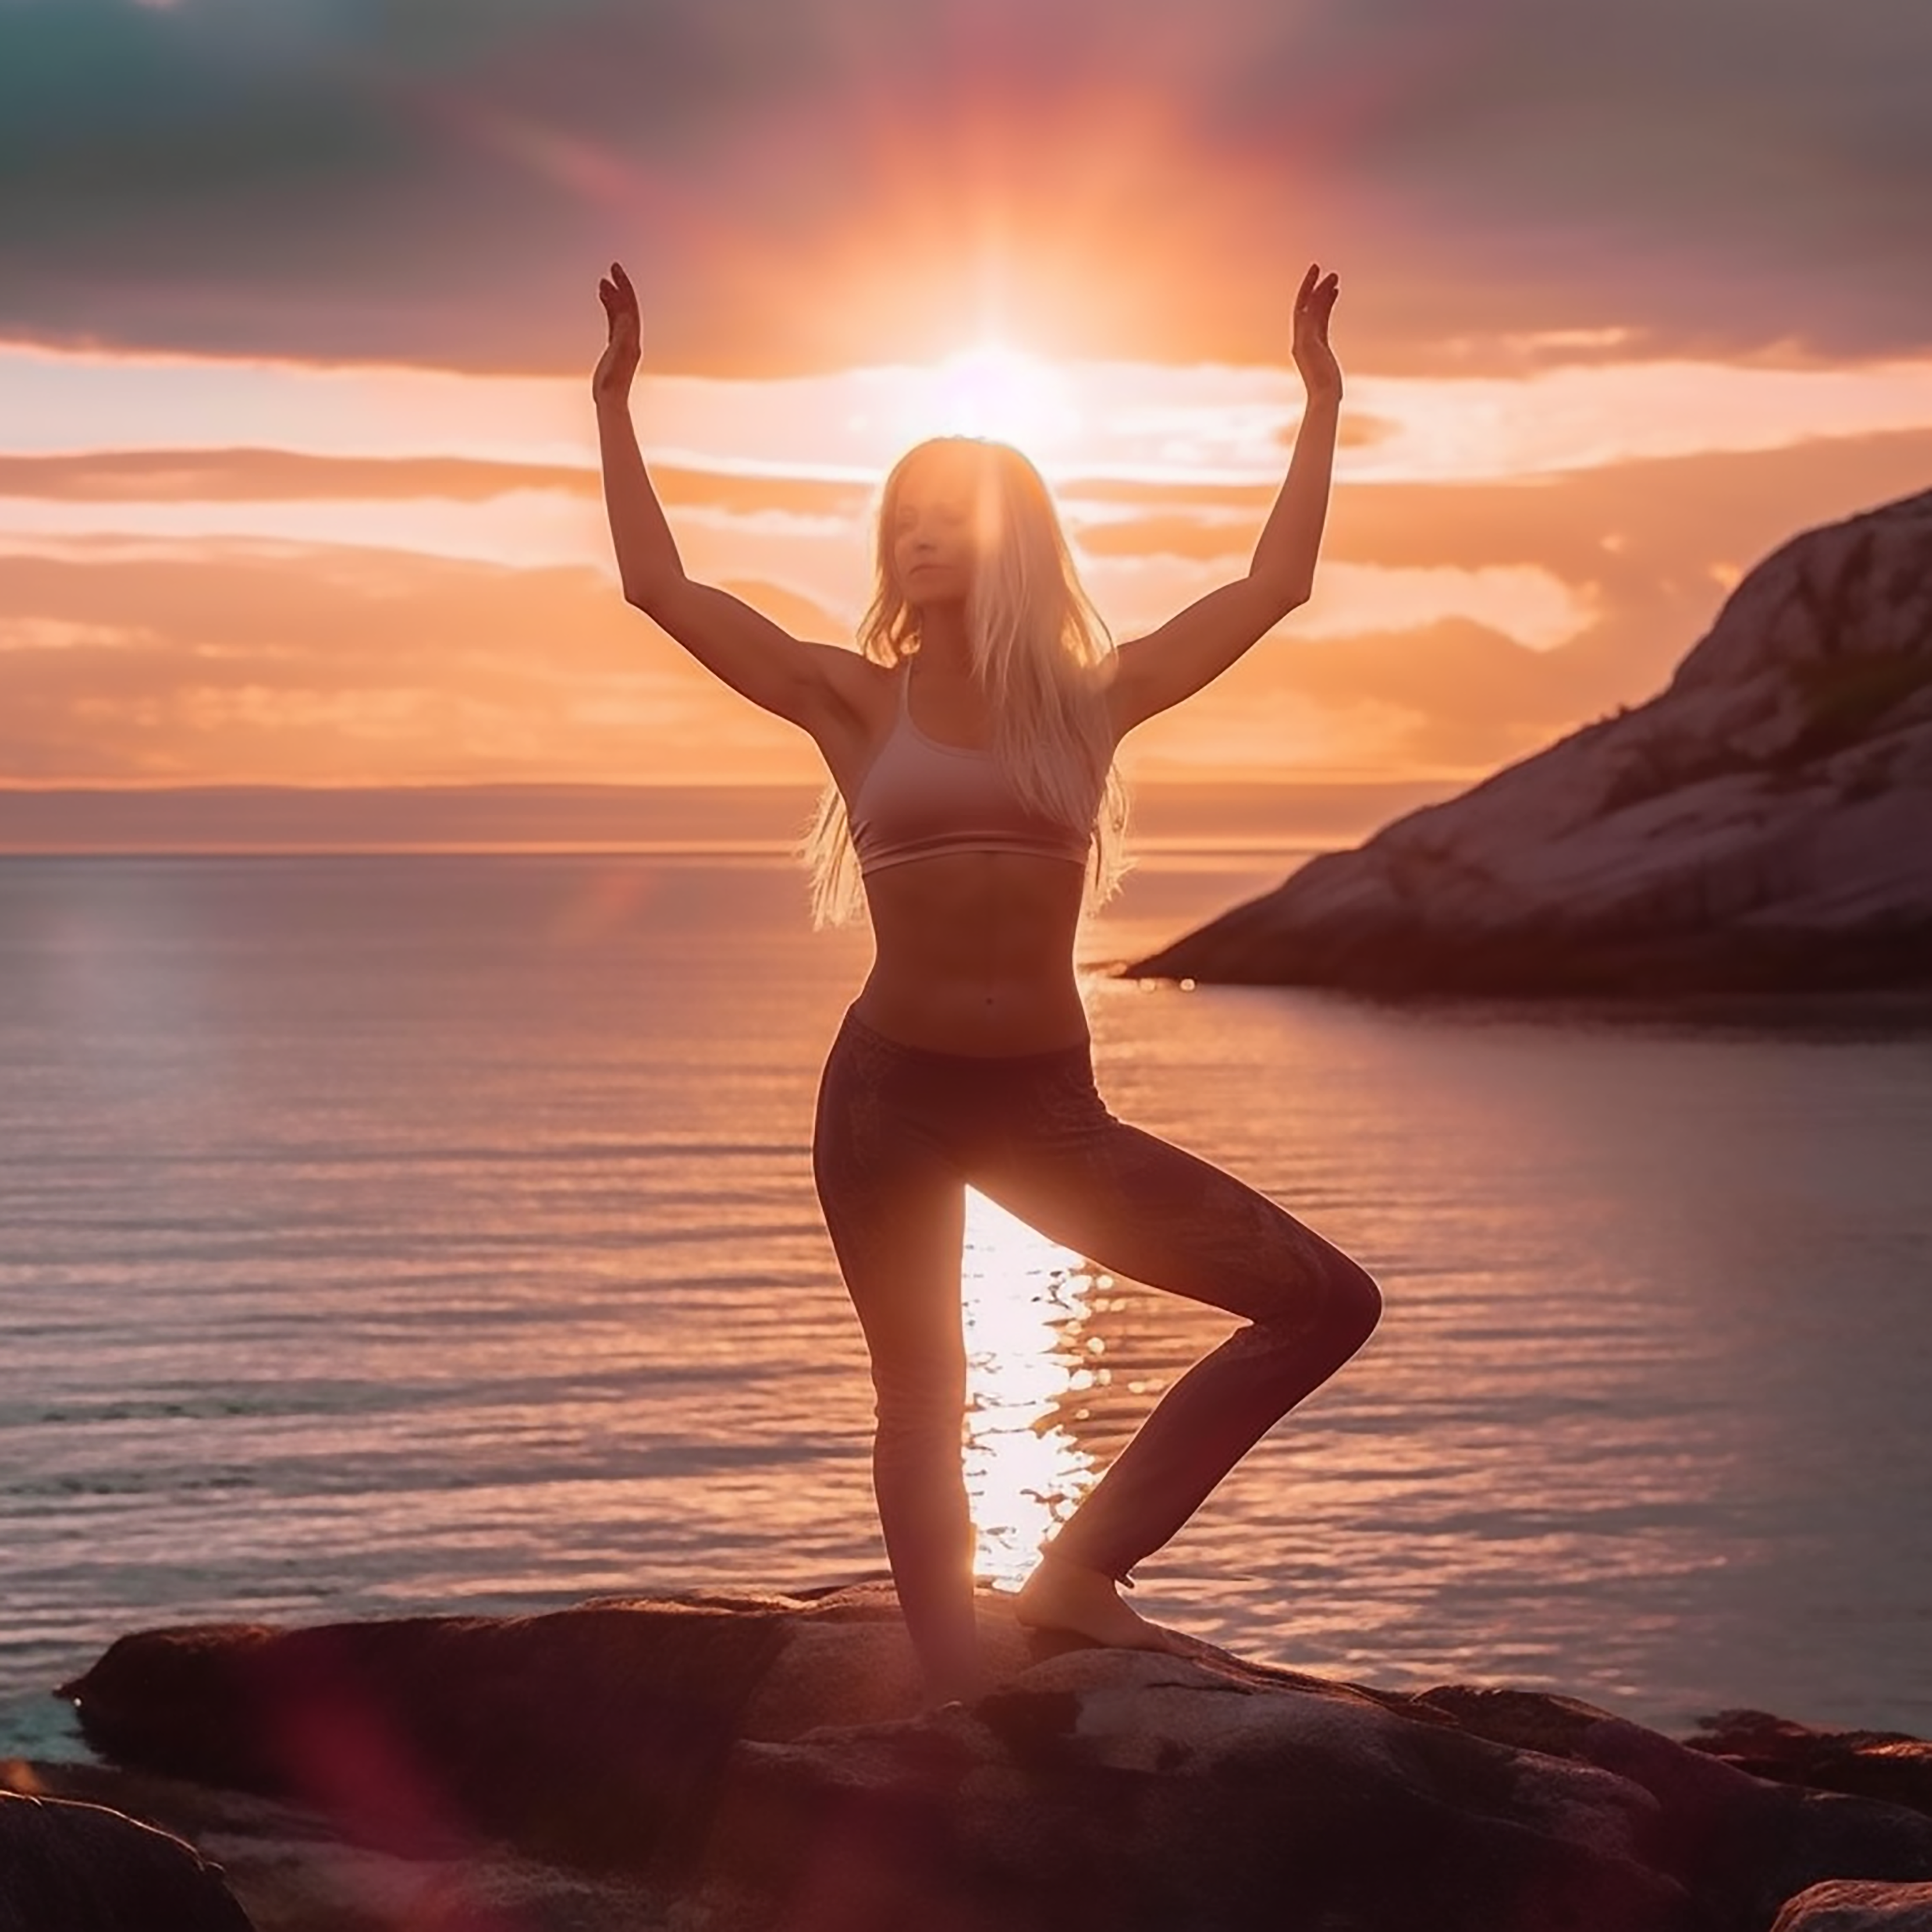 Eine Frau praktiziert an einem ruhigen Morgen Yoga, während die aufgehende Sonne sie mit wärmenden Strahlen umhüllt